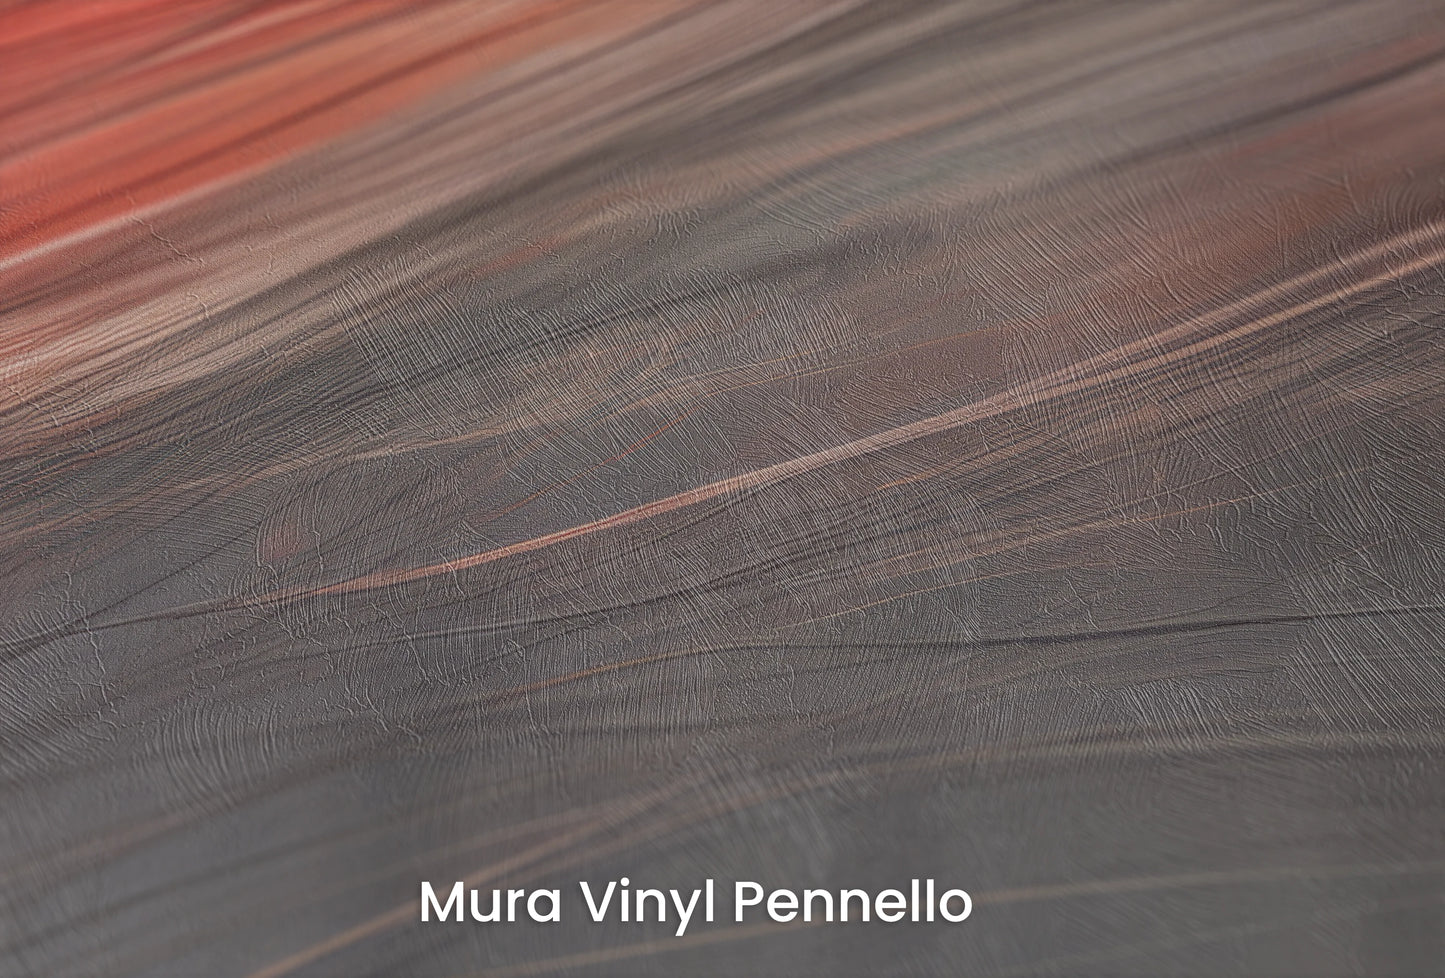 Zbliżenie na artystyczną fototapetę o nazwie Blaze of Glory na podłożu Mura Vinyl Pennello - faktura pociągnięć pędzla malarskiego.